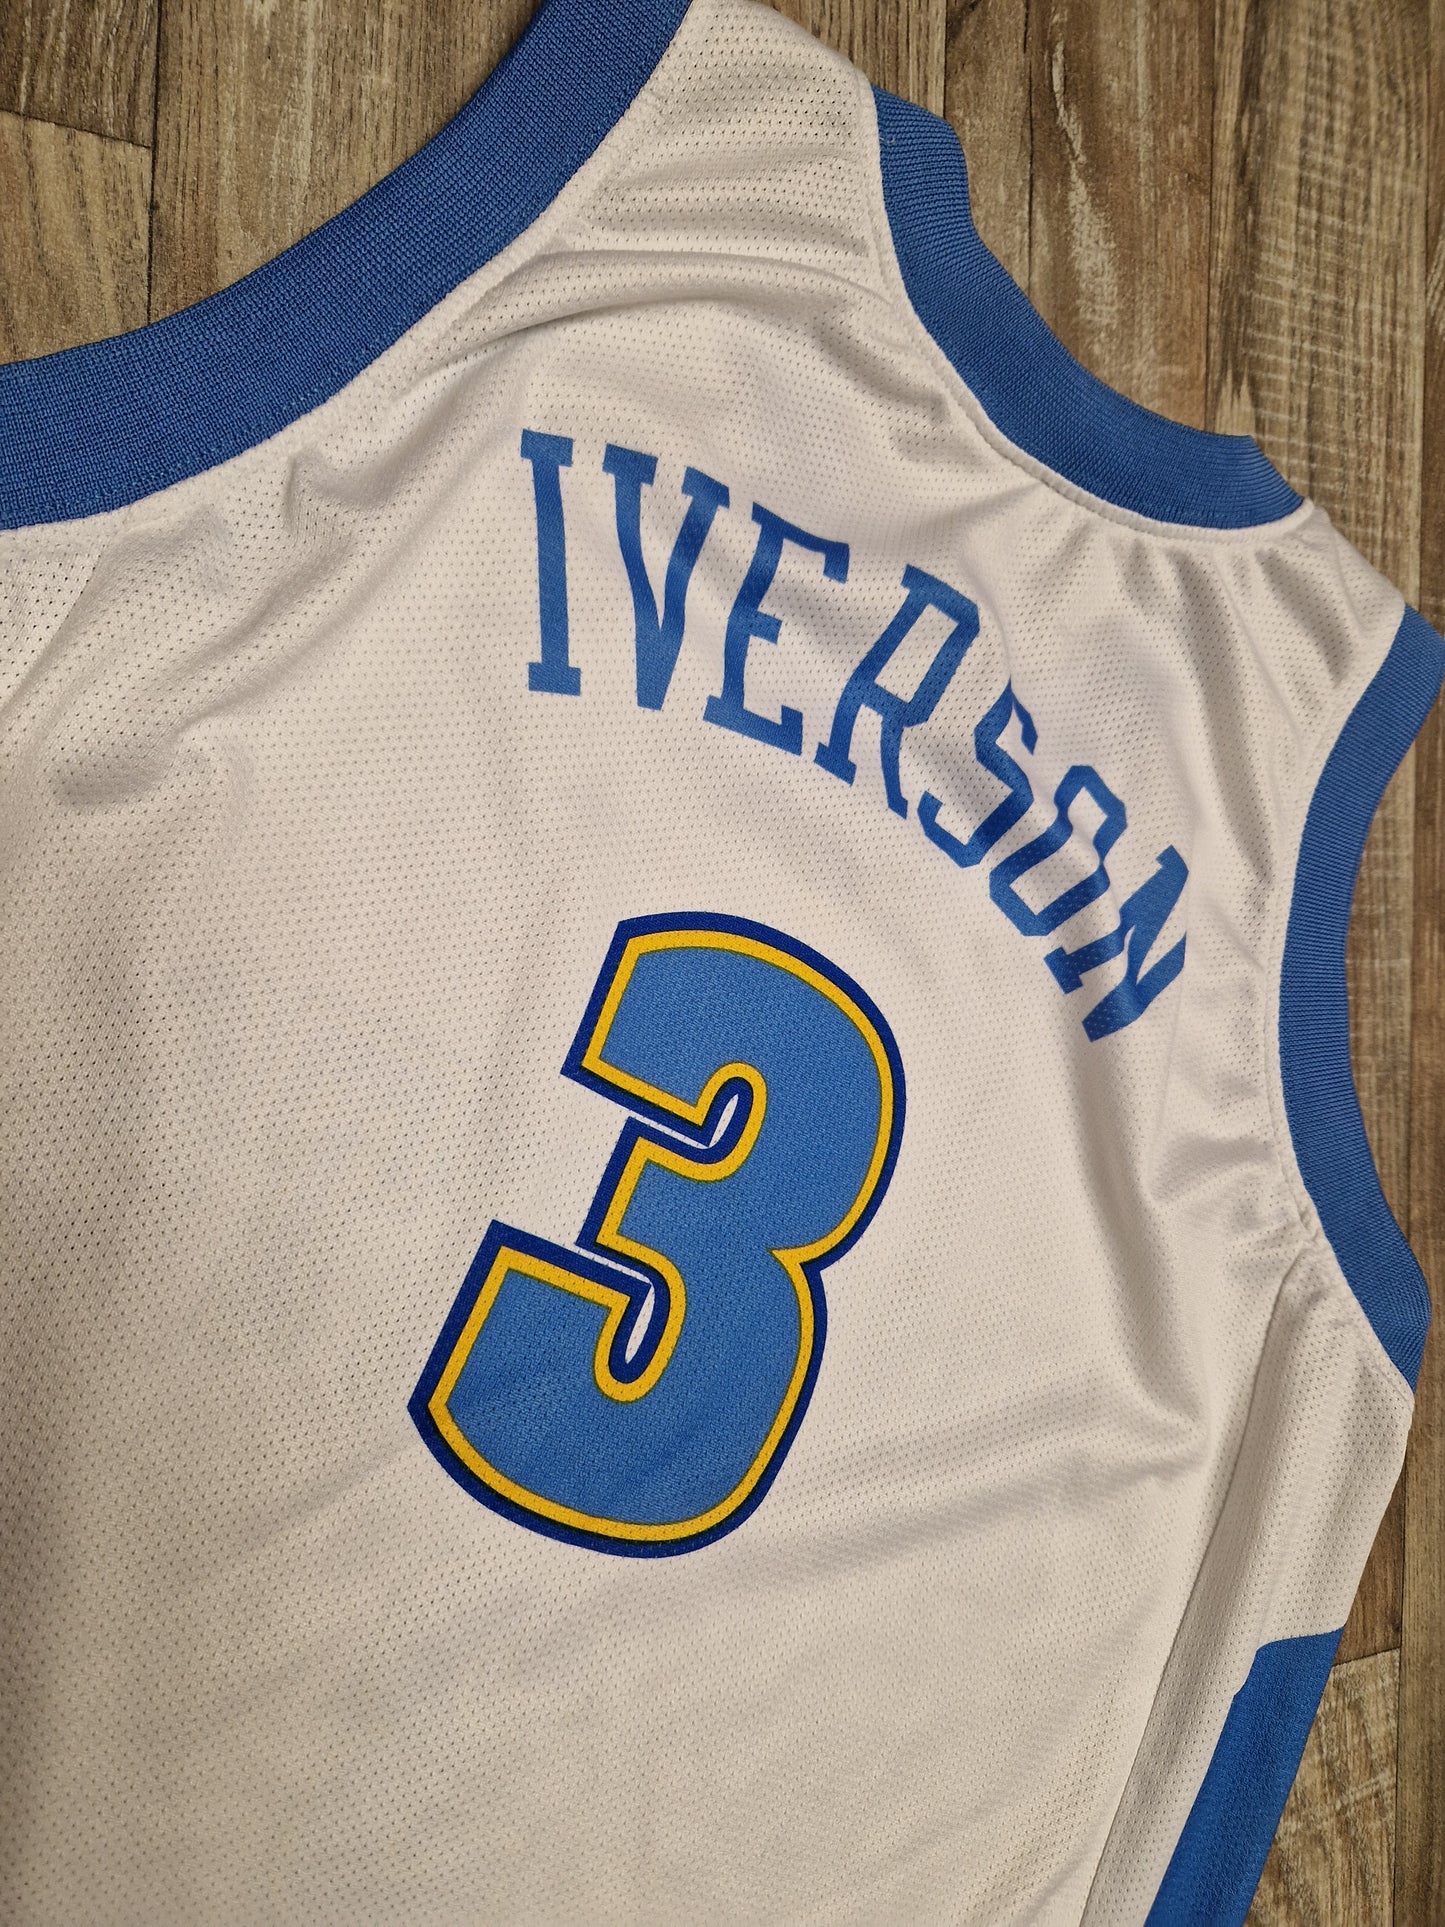 Allen Iverson Denver Nuggets Jersey Size Medium